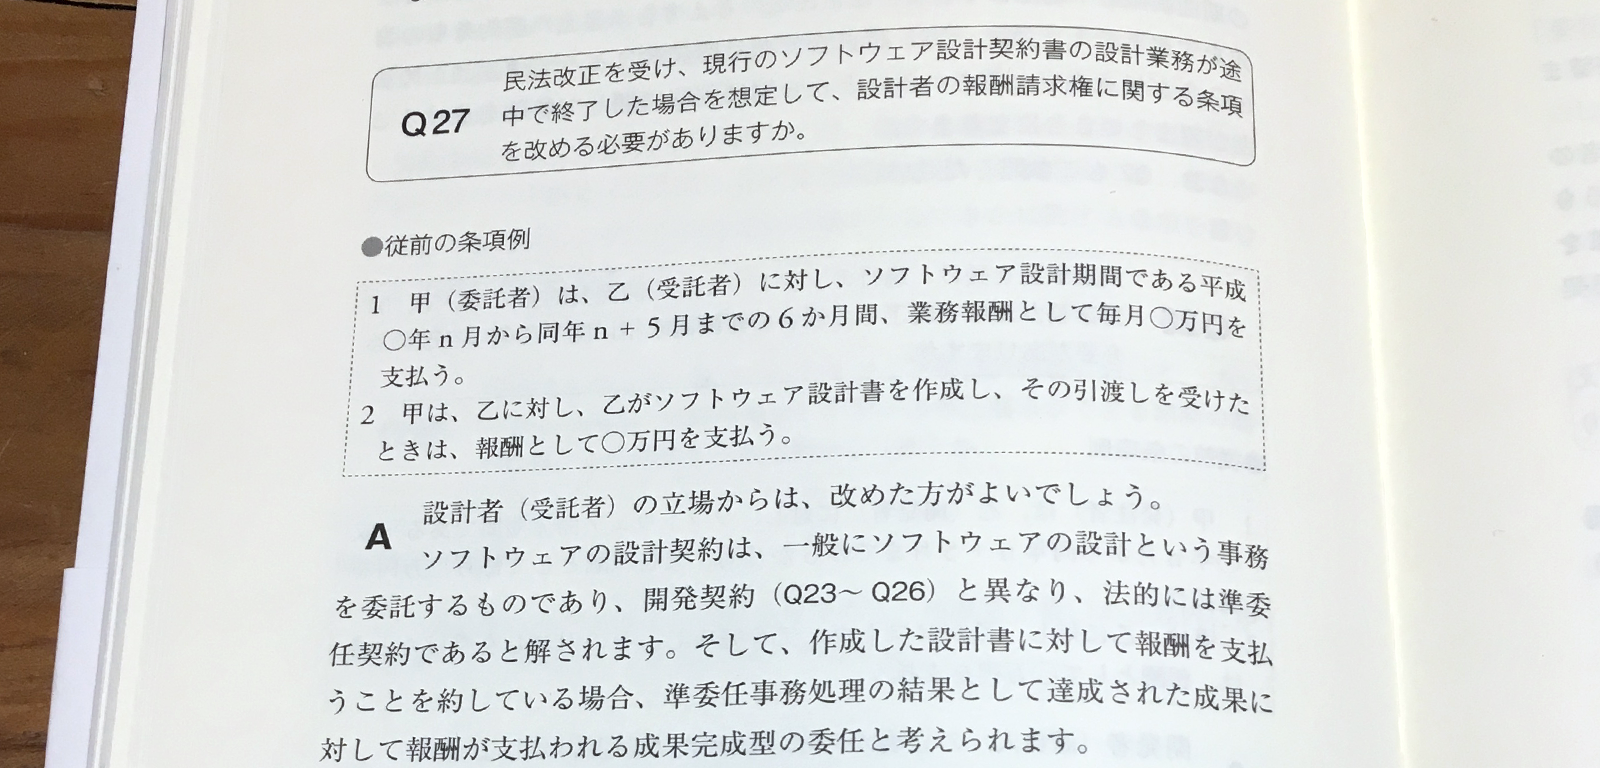 辺見紀男、武井洋一『法務担当者のための契約実務ハンドブック』P126